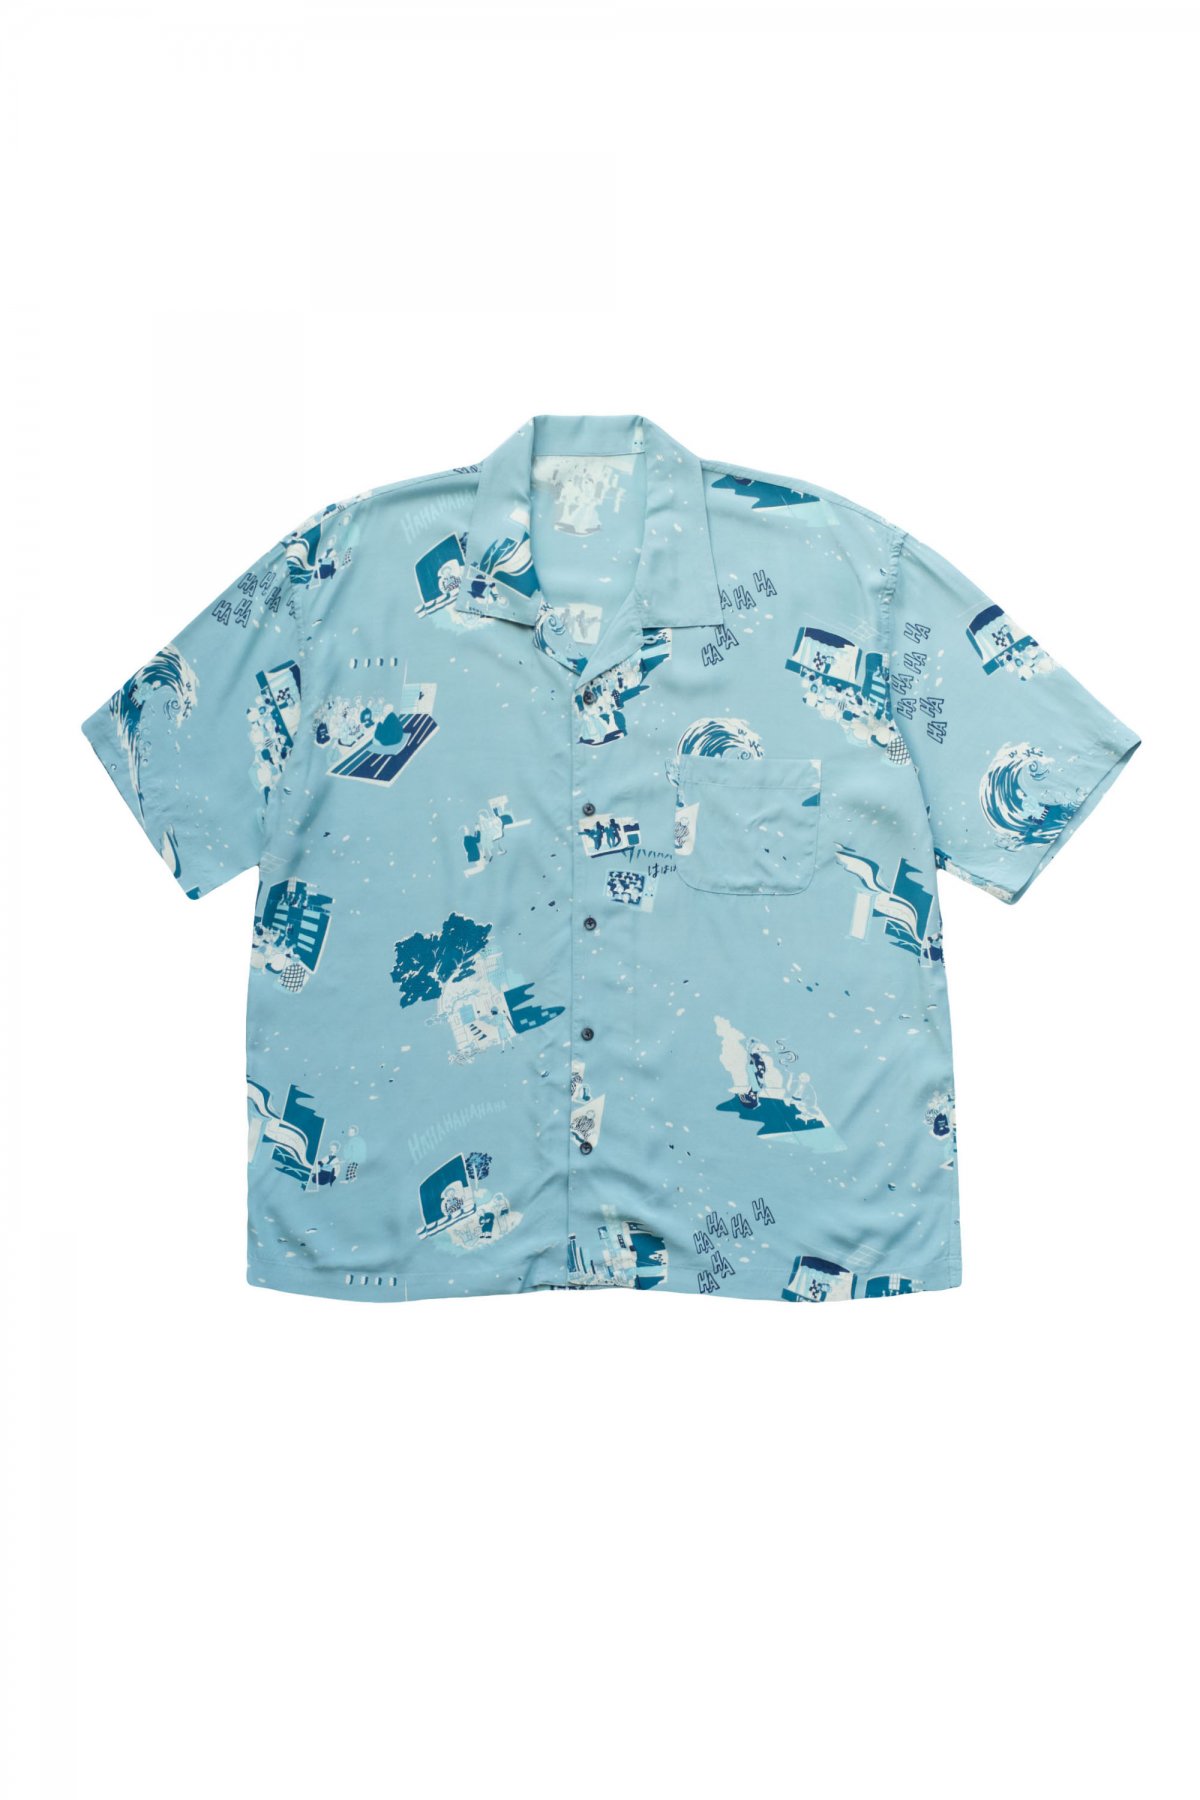 限定ポータークラシック aloha long shirt XLポータークラシック